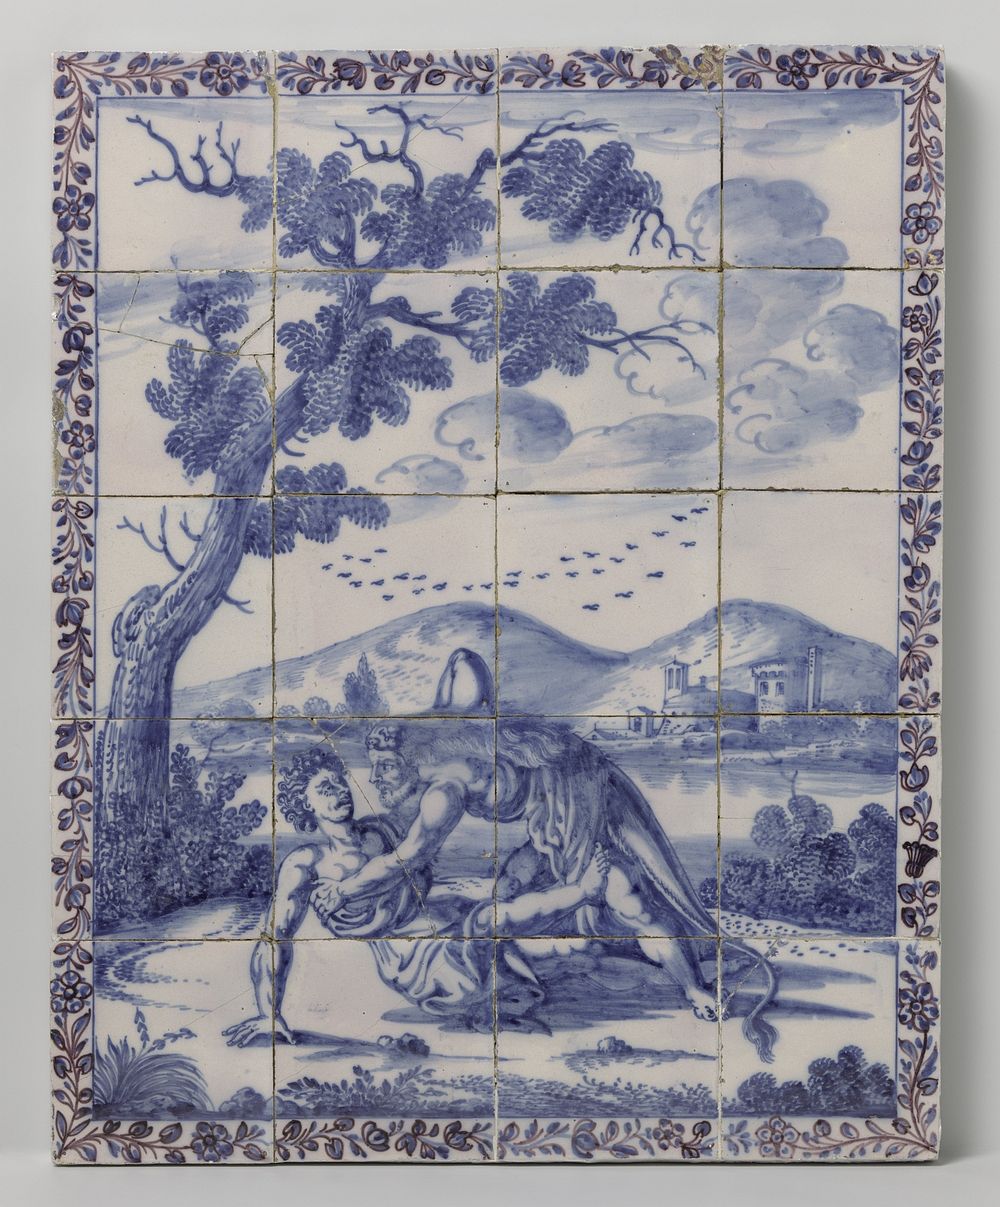 Tegeltableau met in blauw een landschap met mythologische voorstelling: Hercules en Achelous (c. 1720 - c. 1760) by anonymous